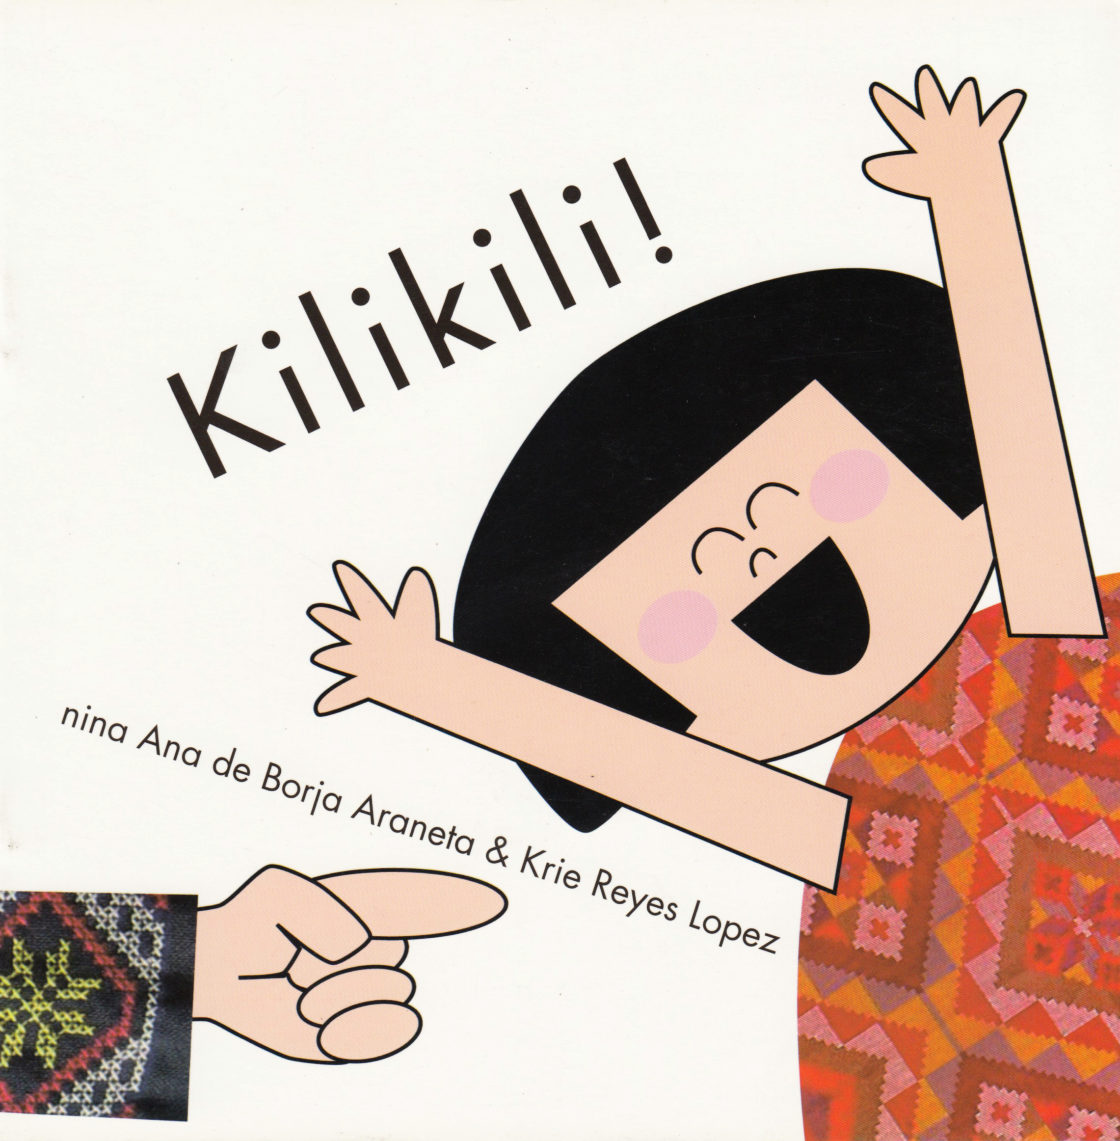 Kilikili! (Filipino)